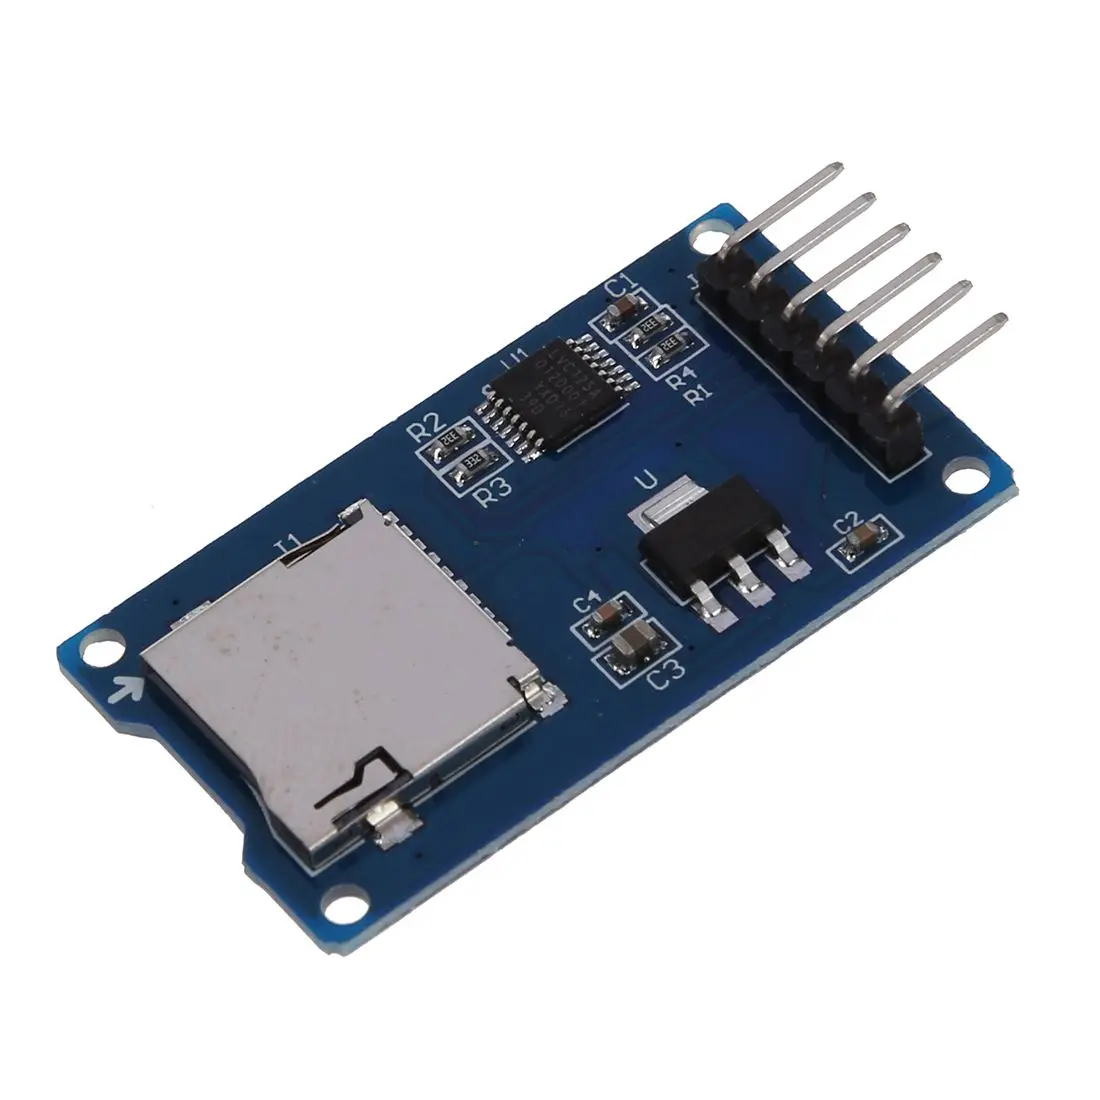 SPI Reader мини TF карта памяти SD памяти щит карты модуль для Arduino